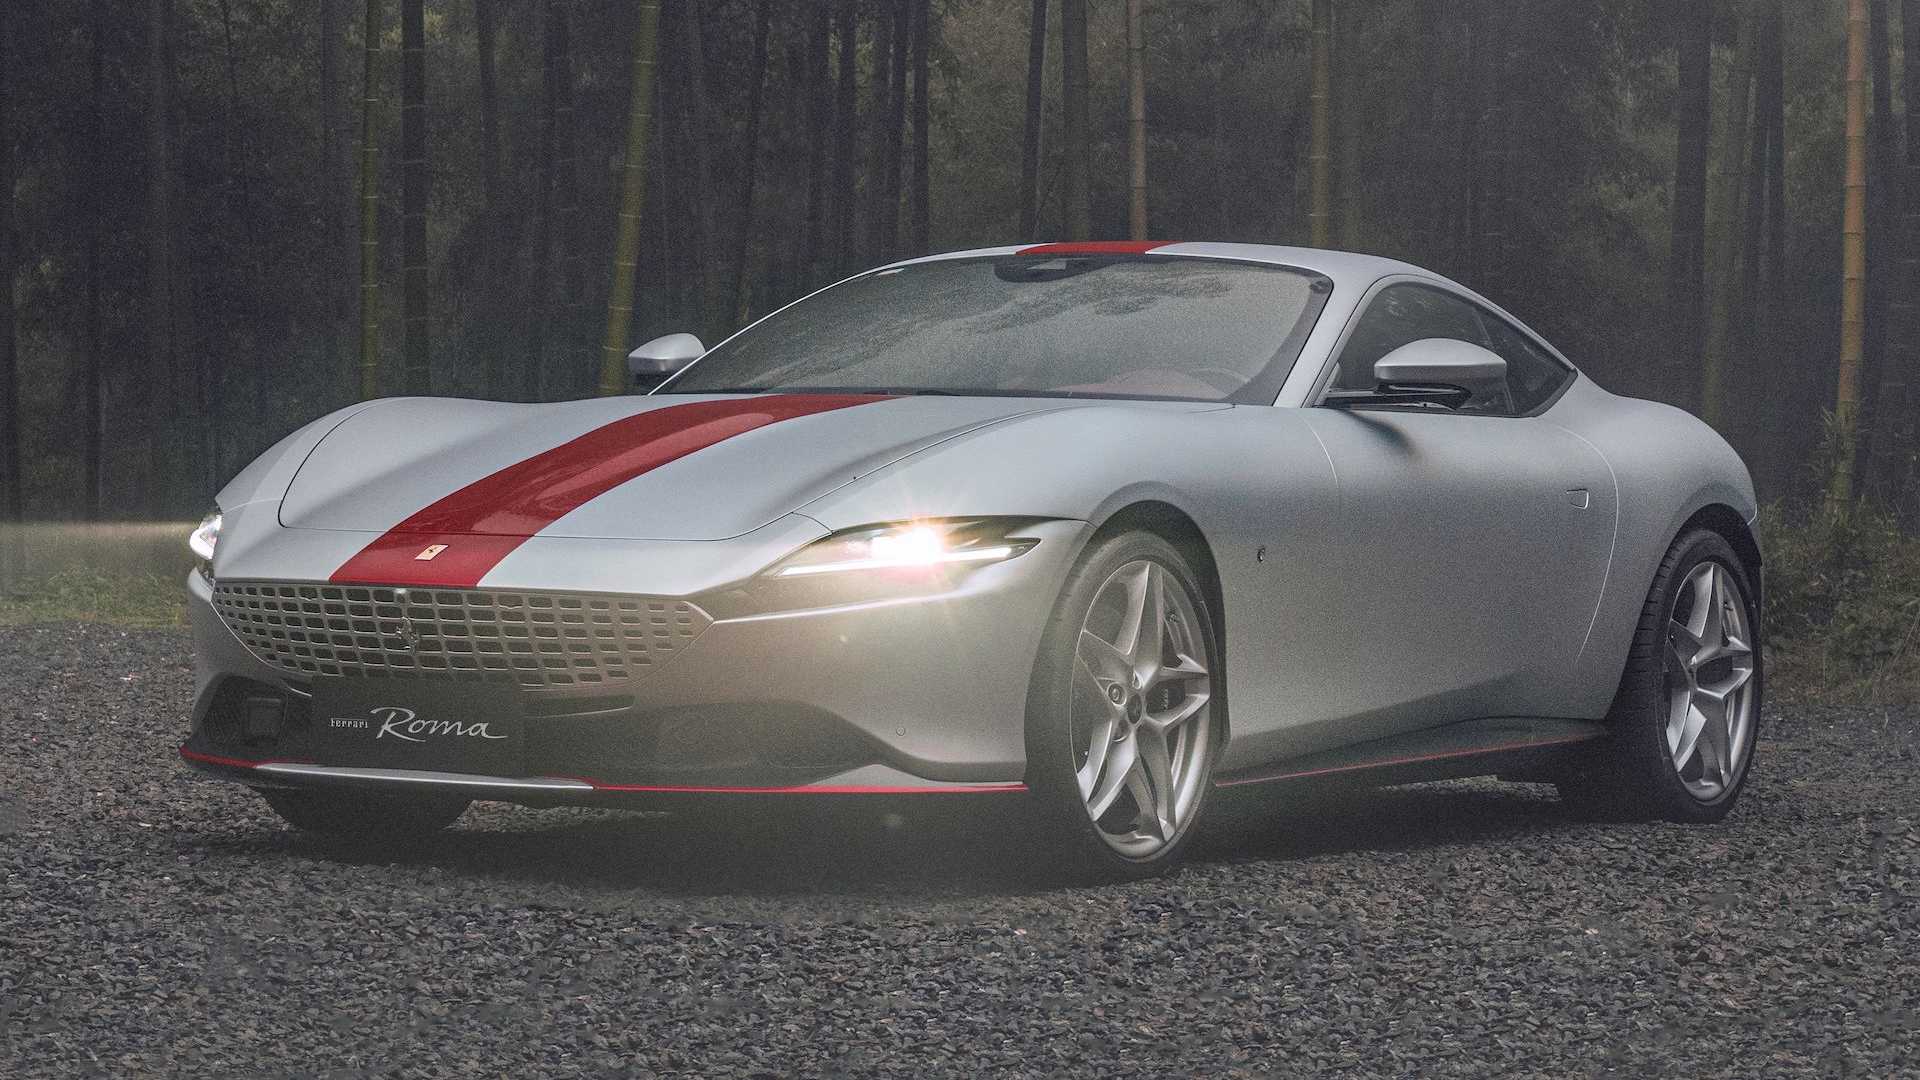 Ferrari célèbre ses 30 ans en Chine avec un modèle Roma unique en son genre conçu par le designer chinois Jiang Qiong'er